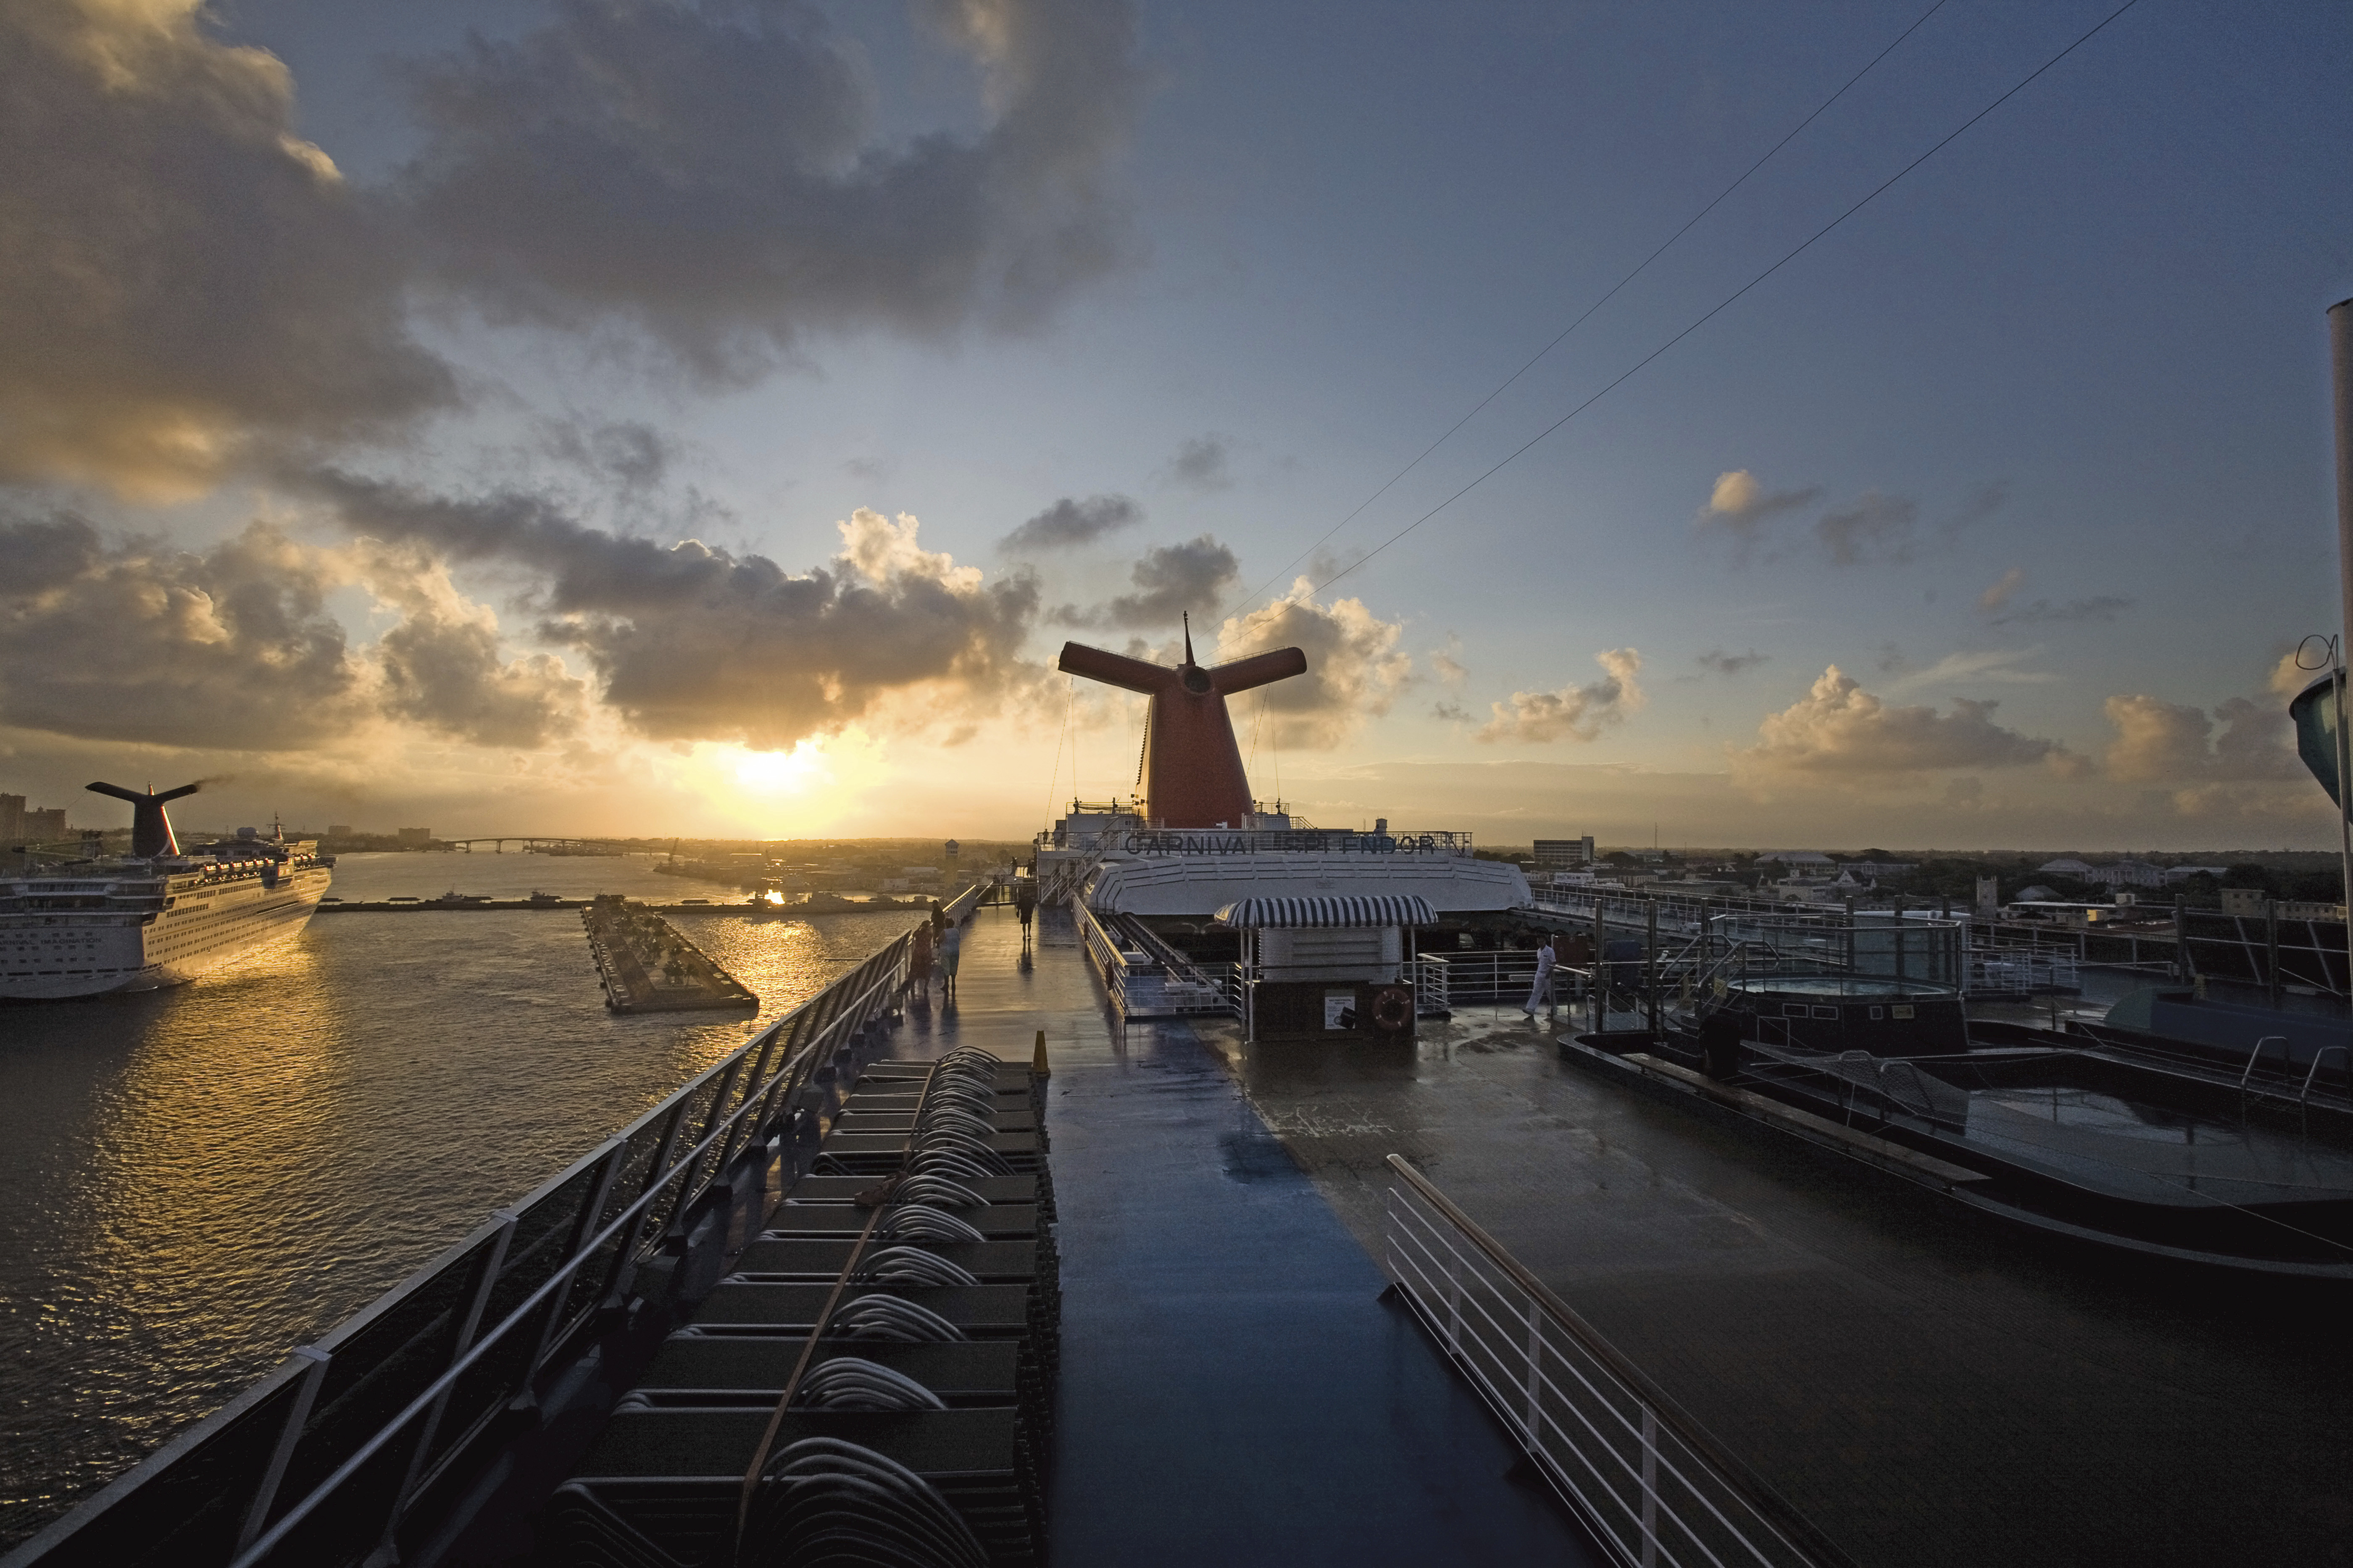 Carnival ship sunset